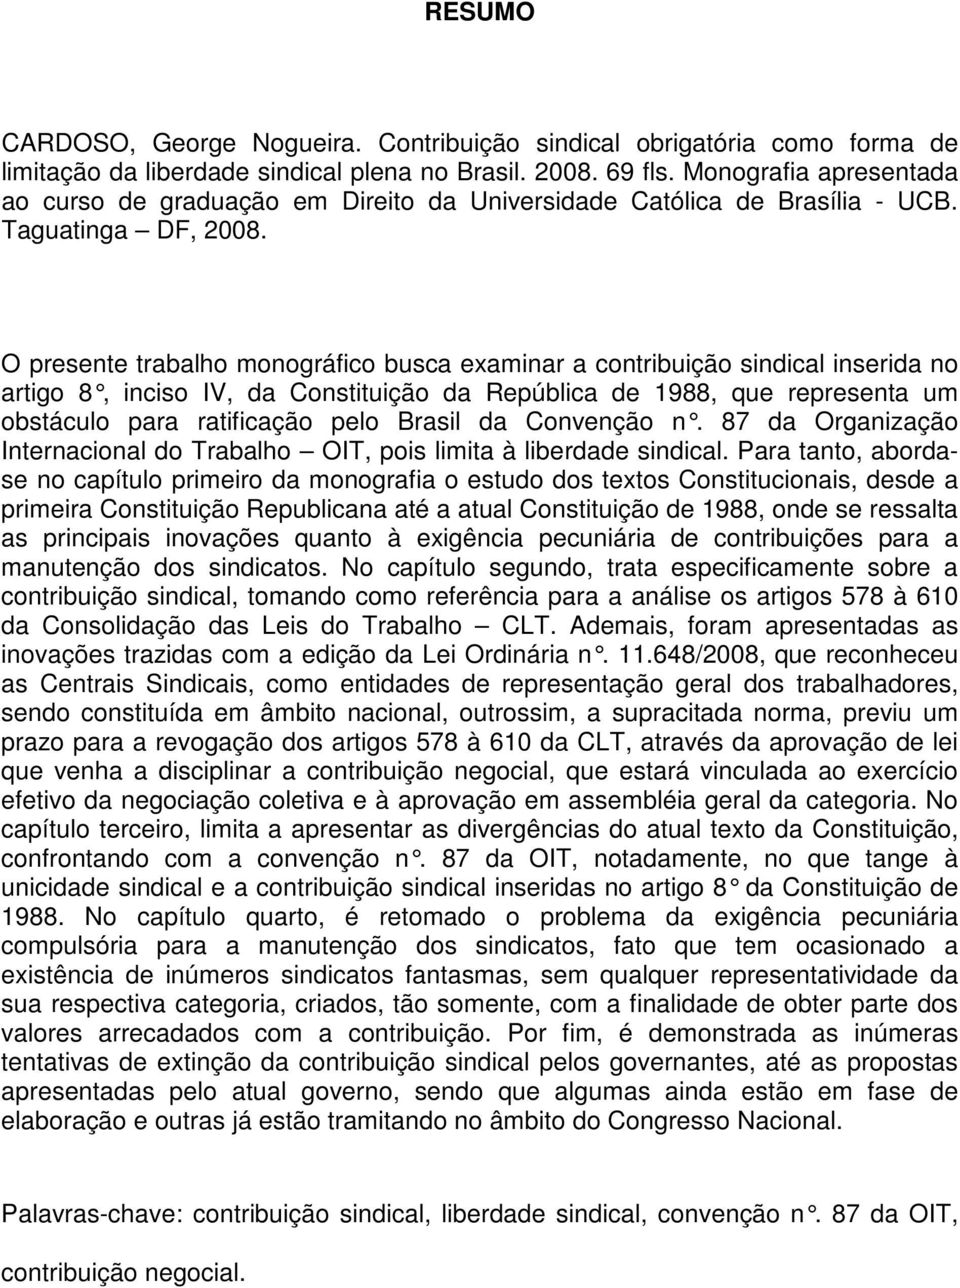 O presente trabalho monográfico busca examinar a contribuição sindical inserida no artigo 8, inciso IV, da Constituição da República de 1988, que representa um obstáculo para ratificação pelo Brasil